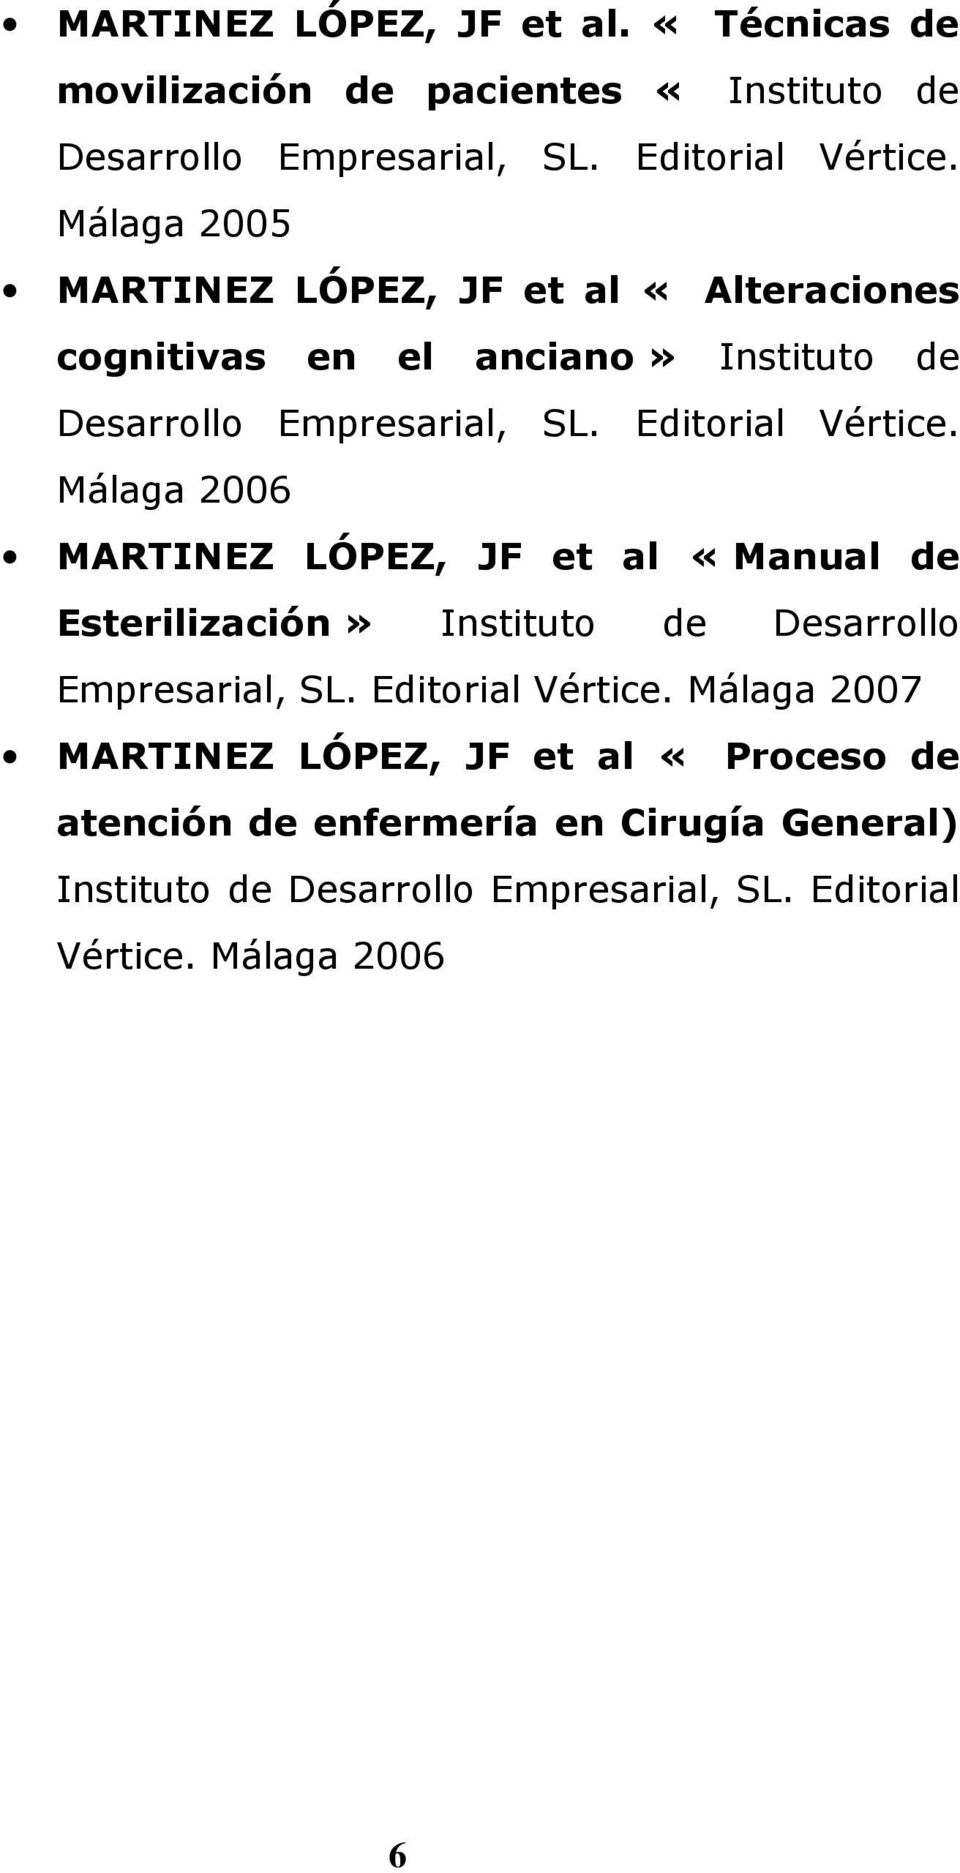 Málaga 2006 MARTINEZ LÓPEZ, JF et al «Manual de Esterilización» Instituto de Desarrollo Empresarial, SL. Editorial Vértice.